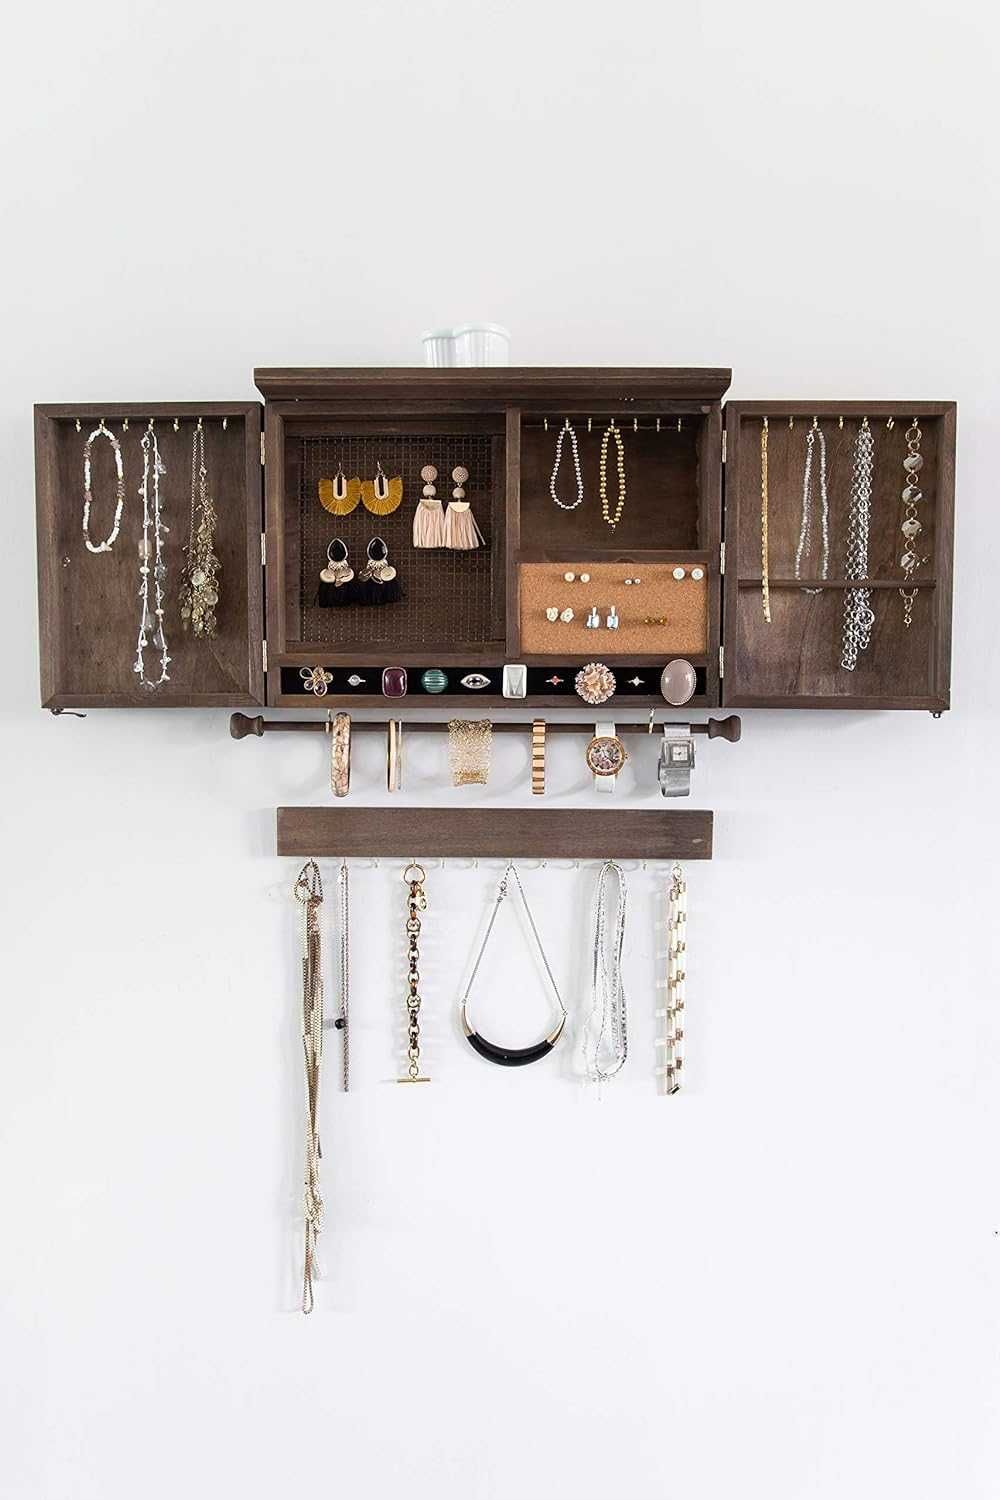 Organizator lemn, dulap rustic bijuterii, accesorii